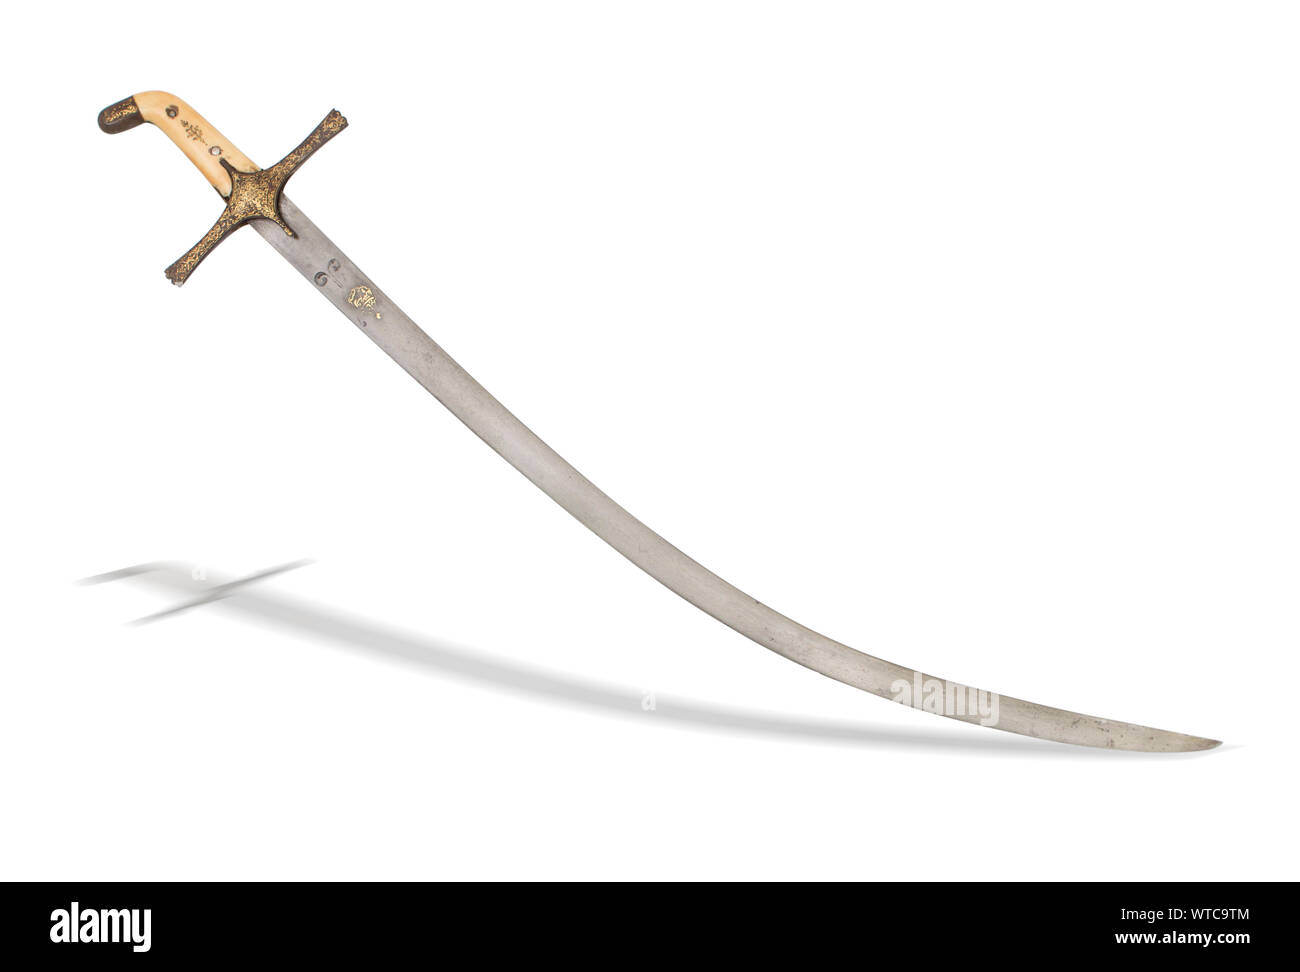 Türkischen Osmanischen shamshir Schwert des 19. Jahrhunderts. Ein shamshir ist eine Art des Nahen Ostens Schwert mit einer radikalen Kurve. Stockfoto